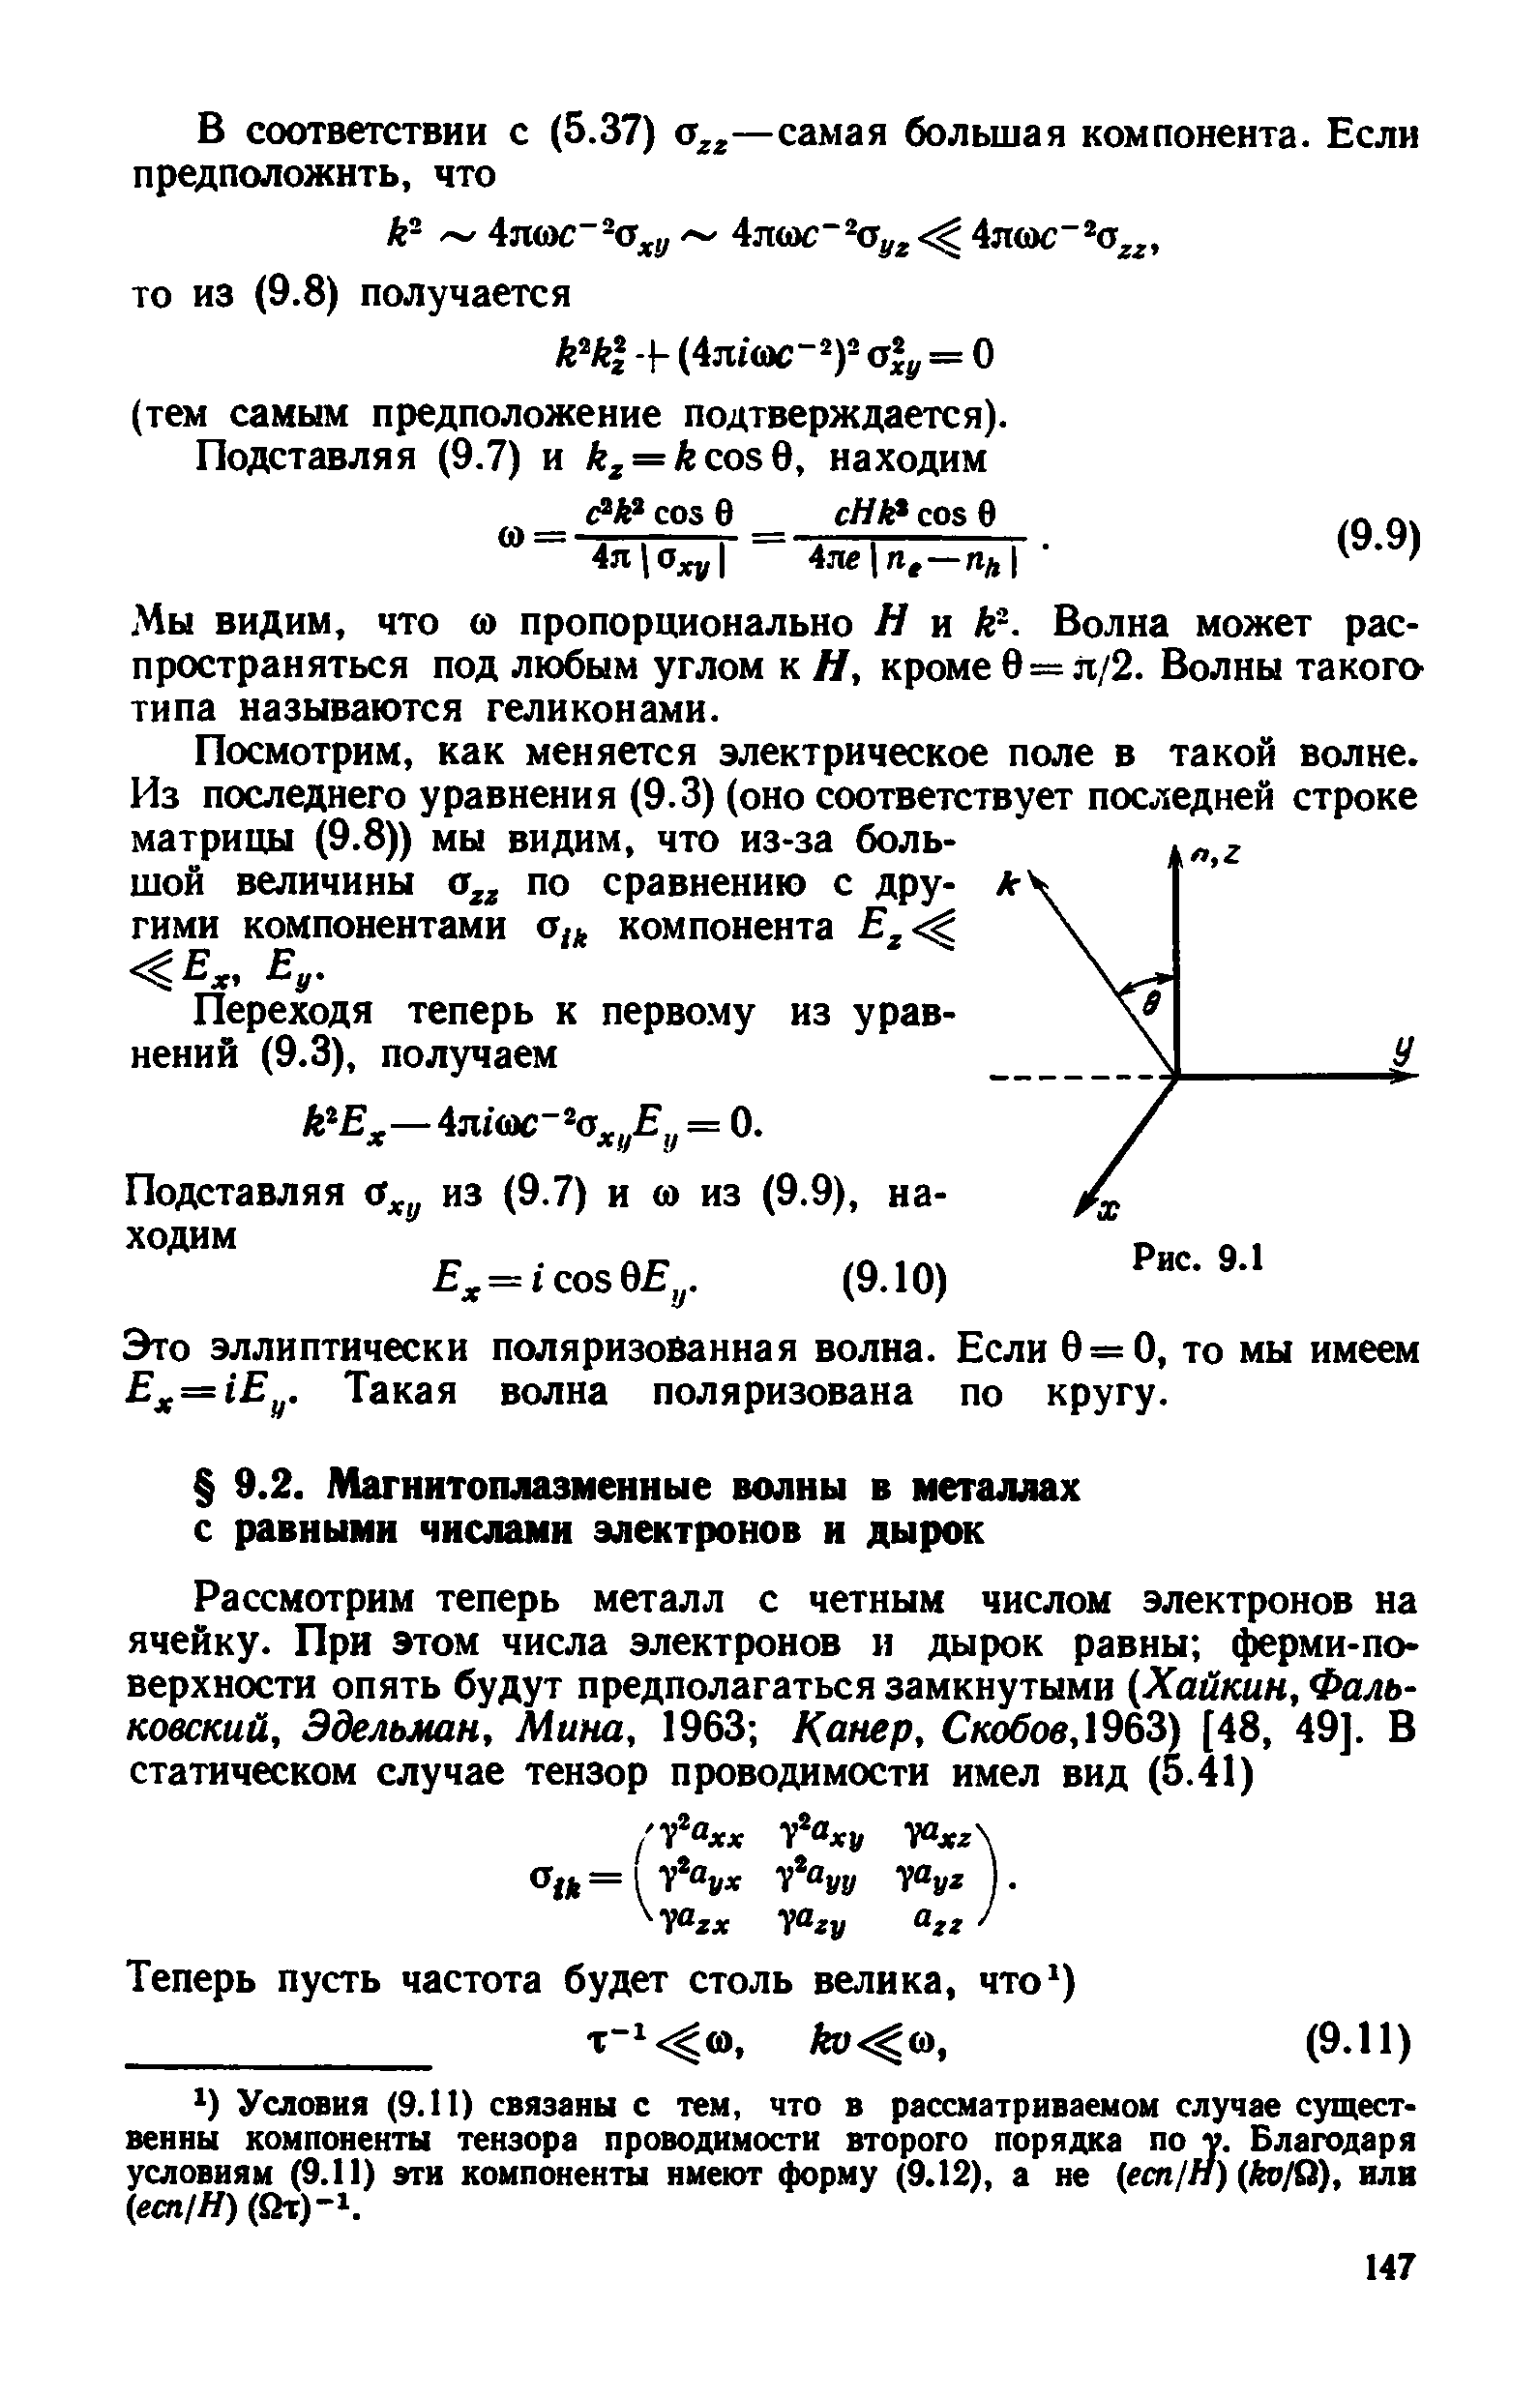 Условия (9.11) связаны с тем, что в рассматриваемом случае существенны компоненты тензора проводимости второго порядка по у. Благодаря условиям (9.11) эти компоненты имеют форму (9.12), а не есп1Н) ко10), или есп/Н) (От)-1.
